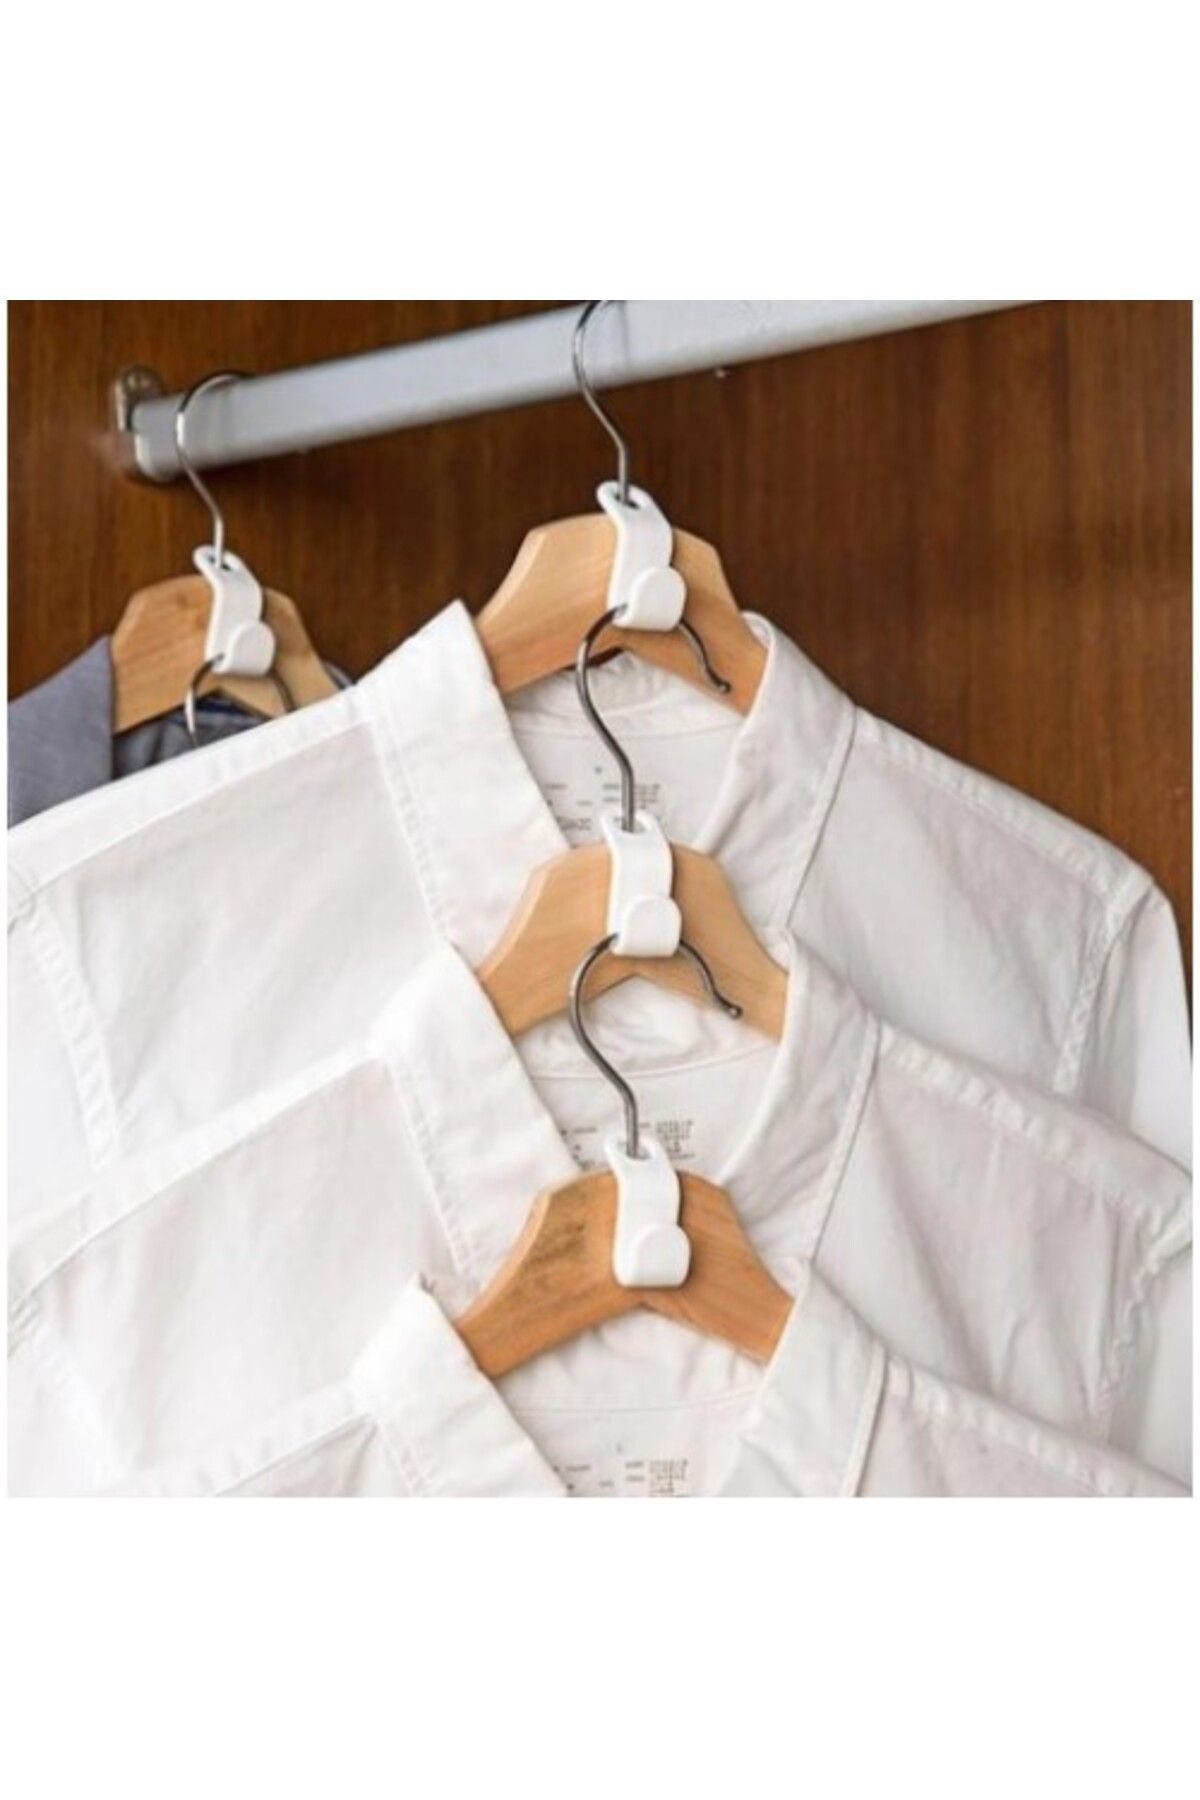 Genel Markalar Askı Çoğaltıcı Kanca Seti - Pratik Düzenleyici Kıyafet Askı Çoğaltma Klips - 10 Adet Elbise Askı